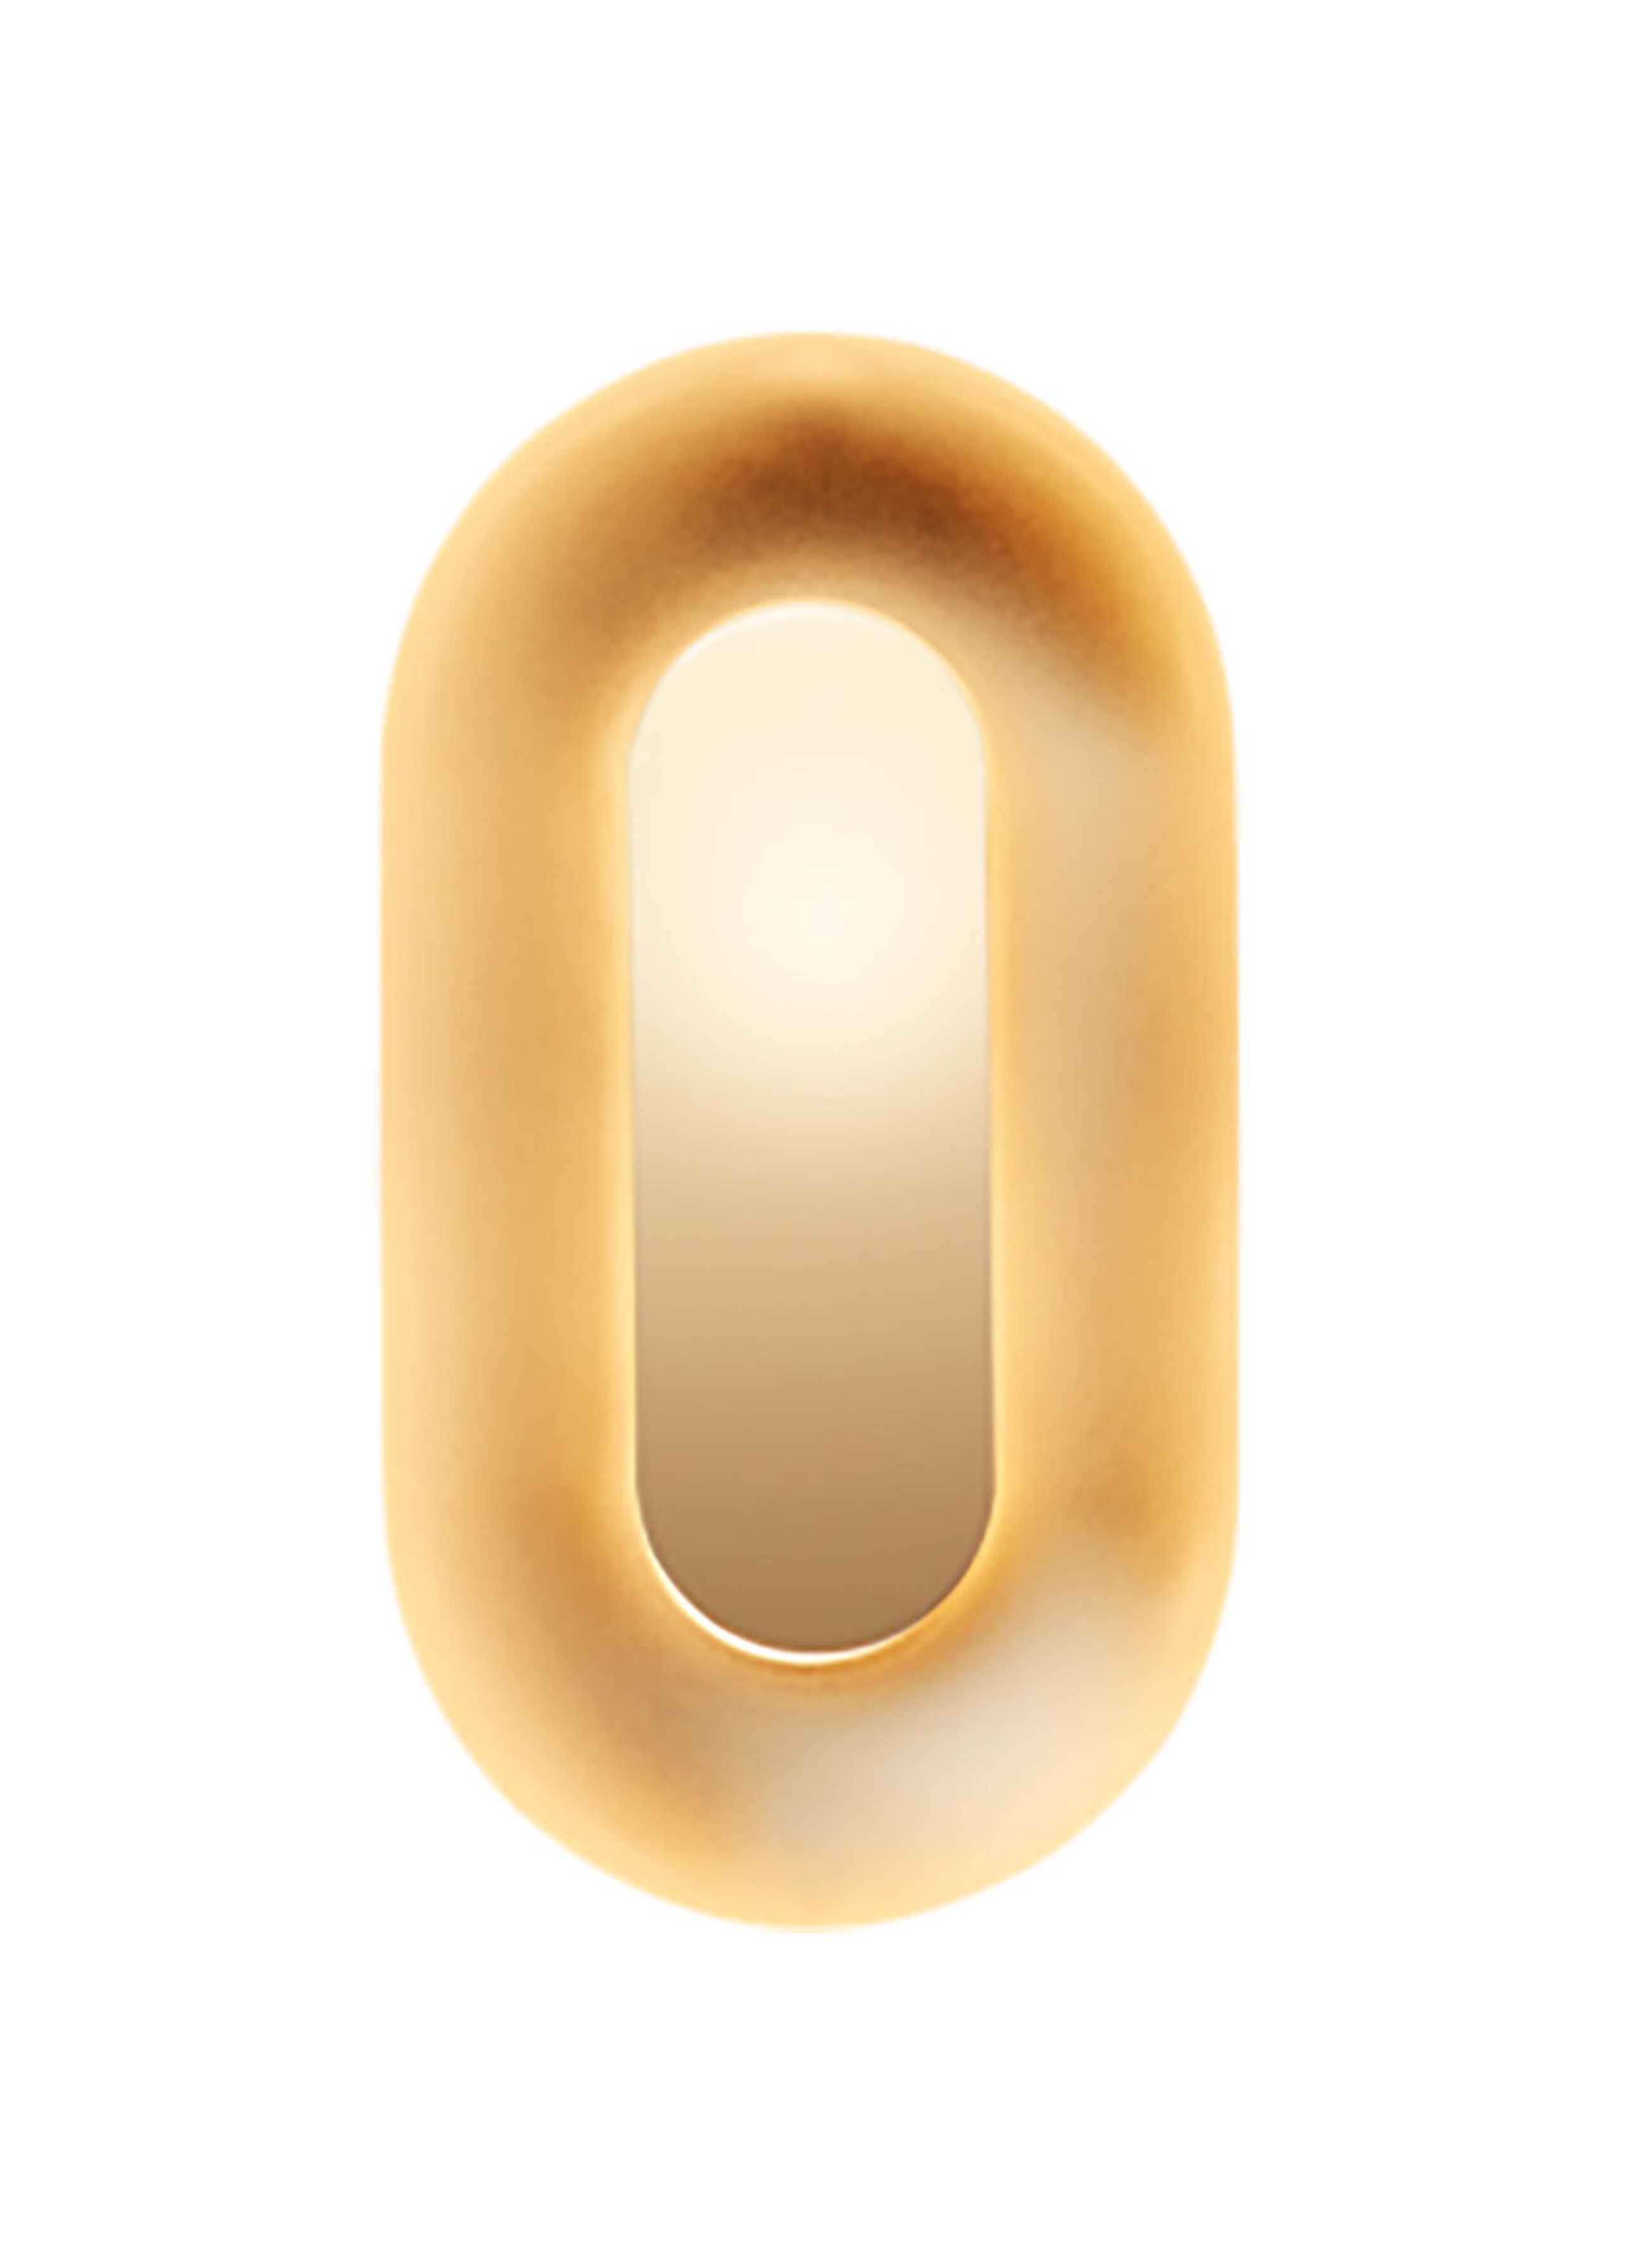 Nuura - Væglampe - Sasi - Brass - Small